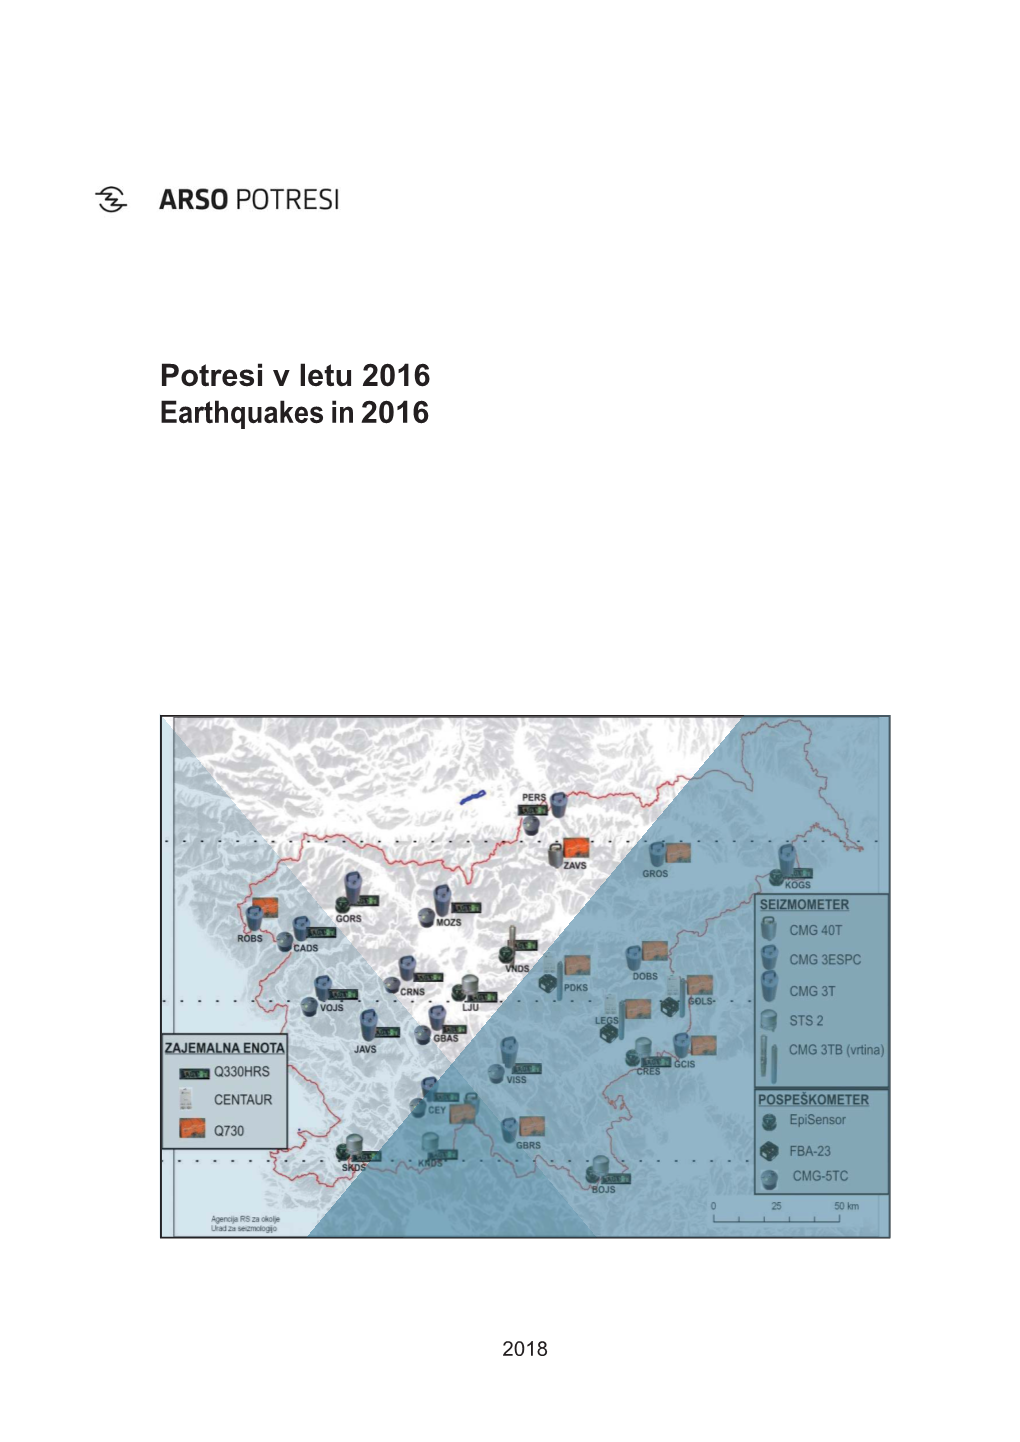 Potresi V Letu 2016 Earthquakes in 2016